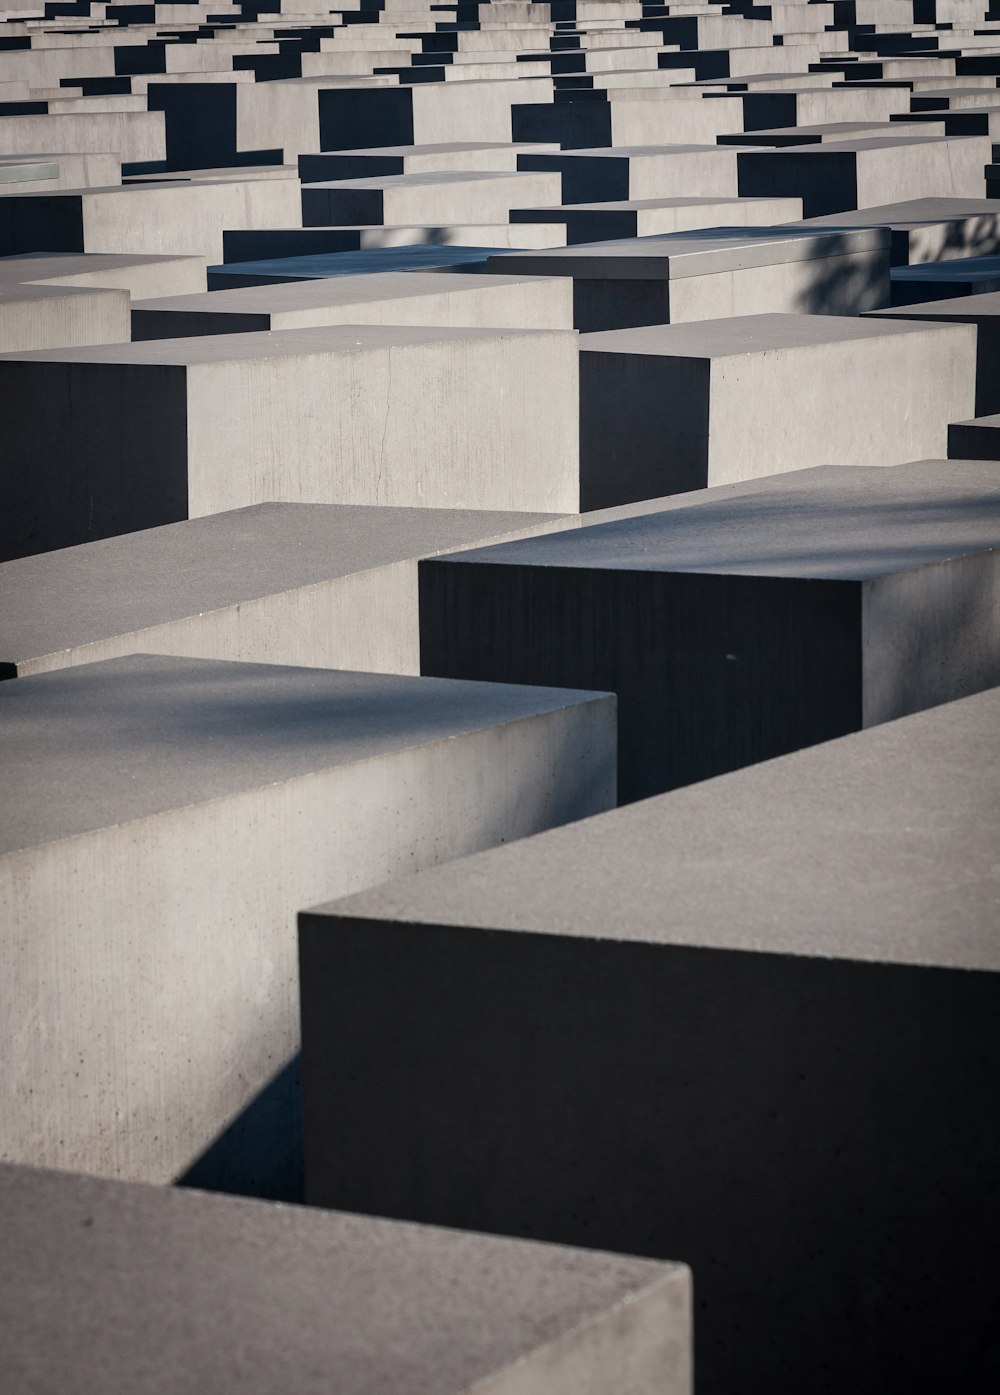 gray cube maze blocks photography